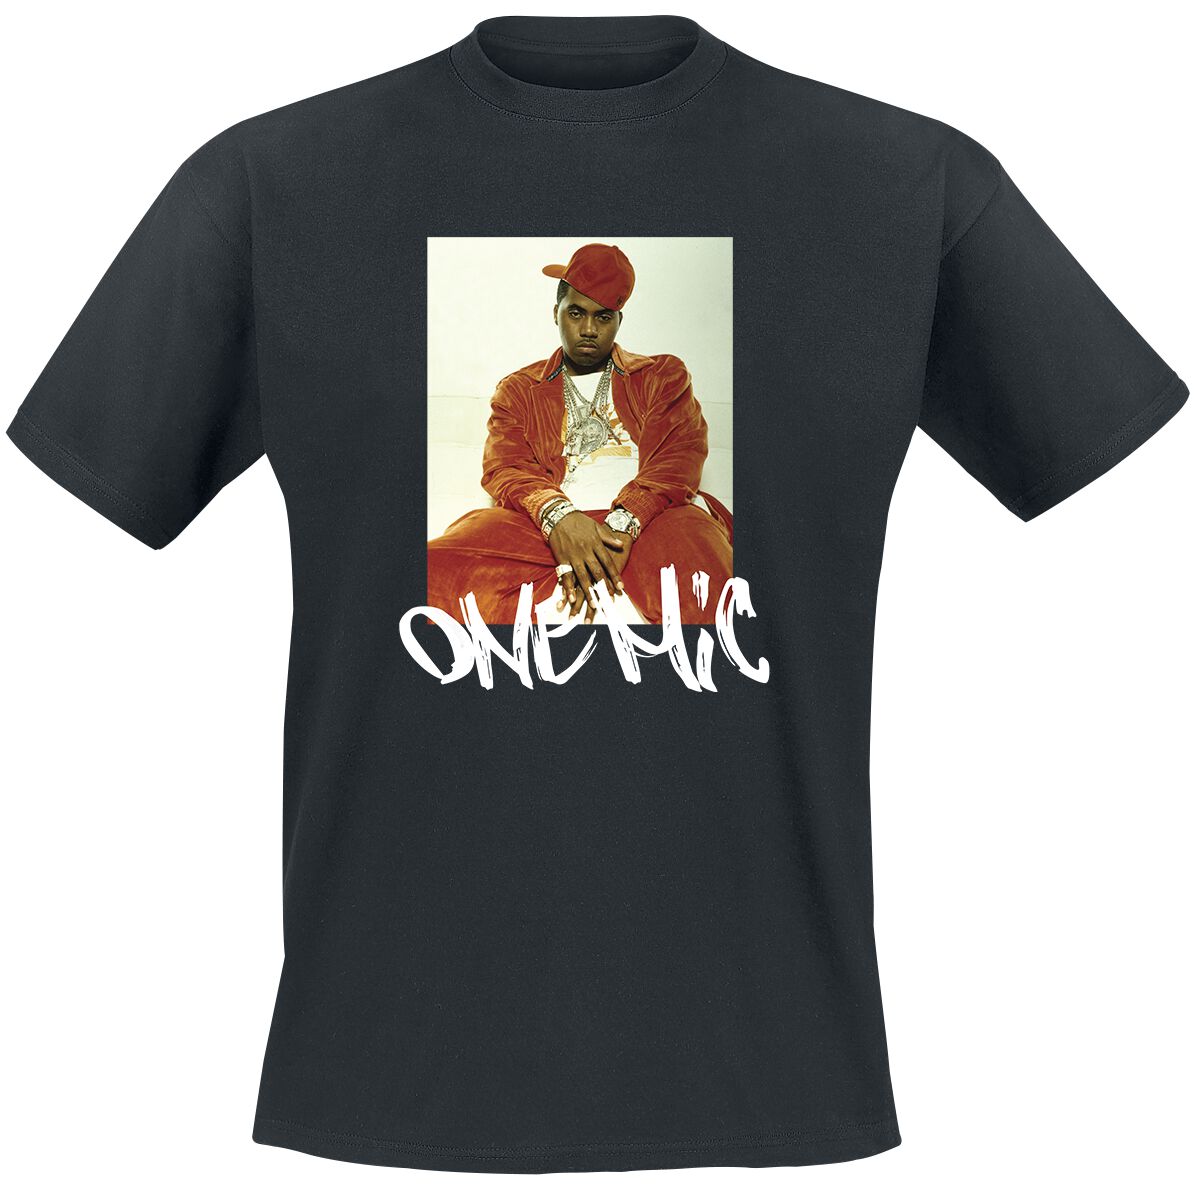 Nas T-Shirt - Stillmatic One Mic - S bis 3XL - für Männer - Größe 3XL - schwarz  - Lizenziertes Merchandise!